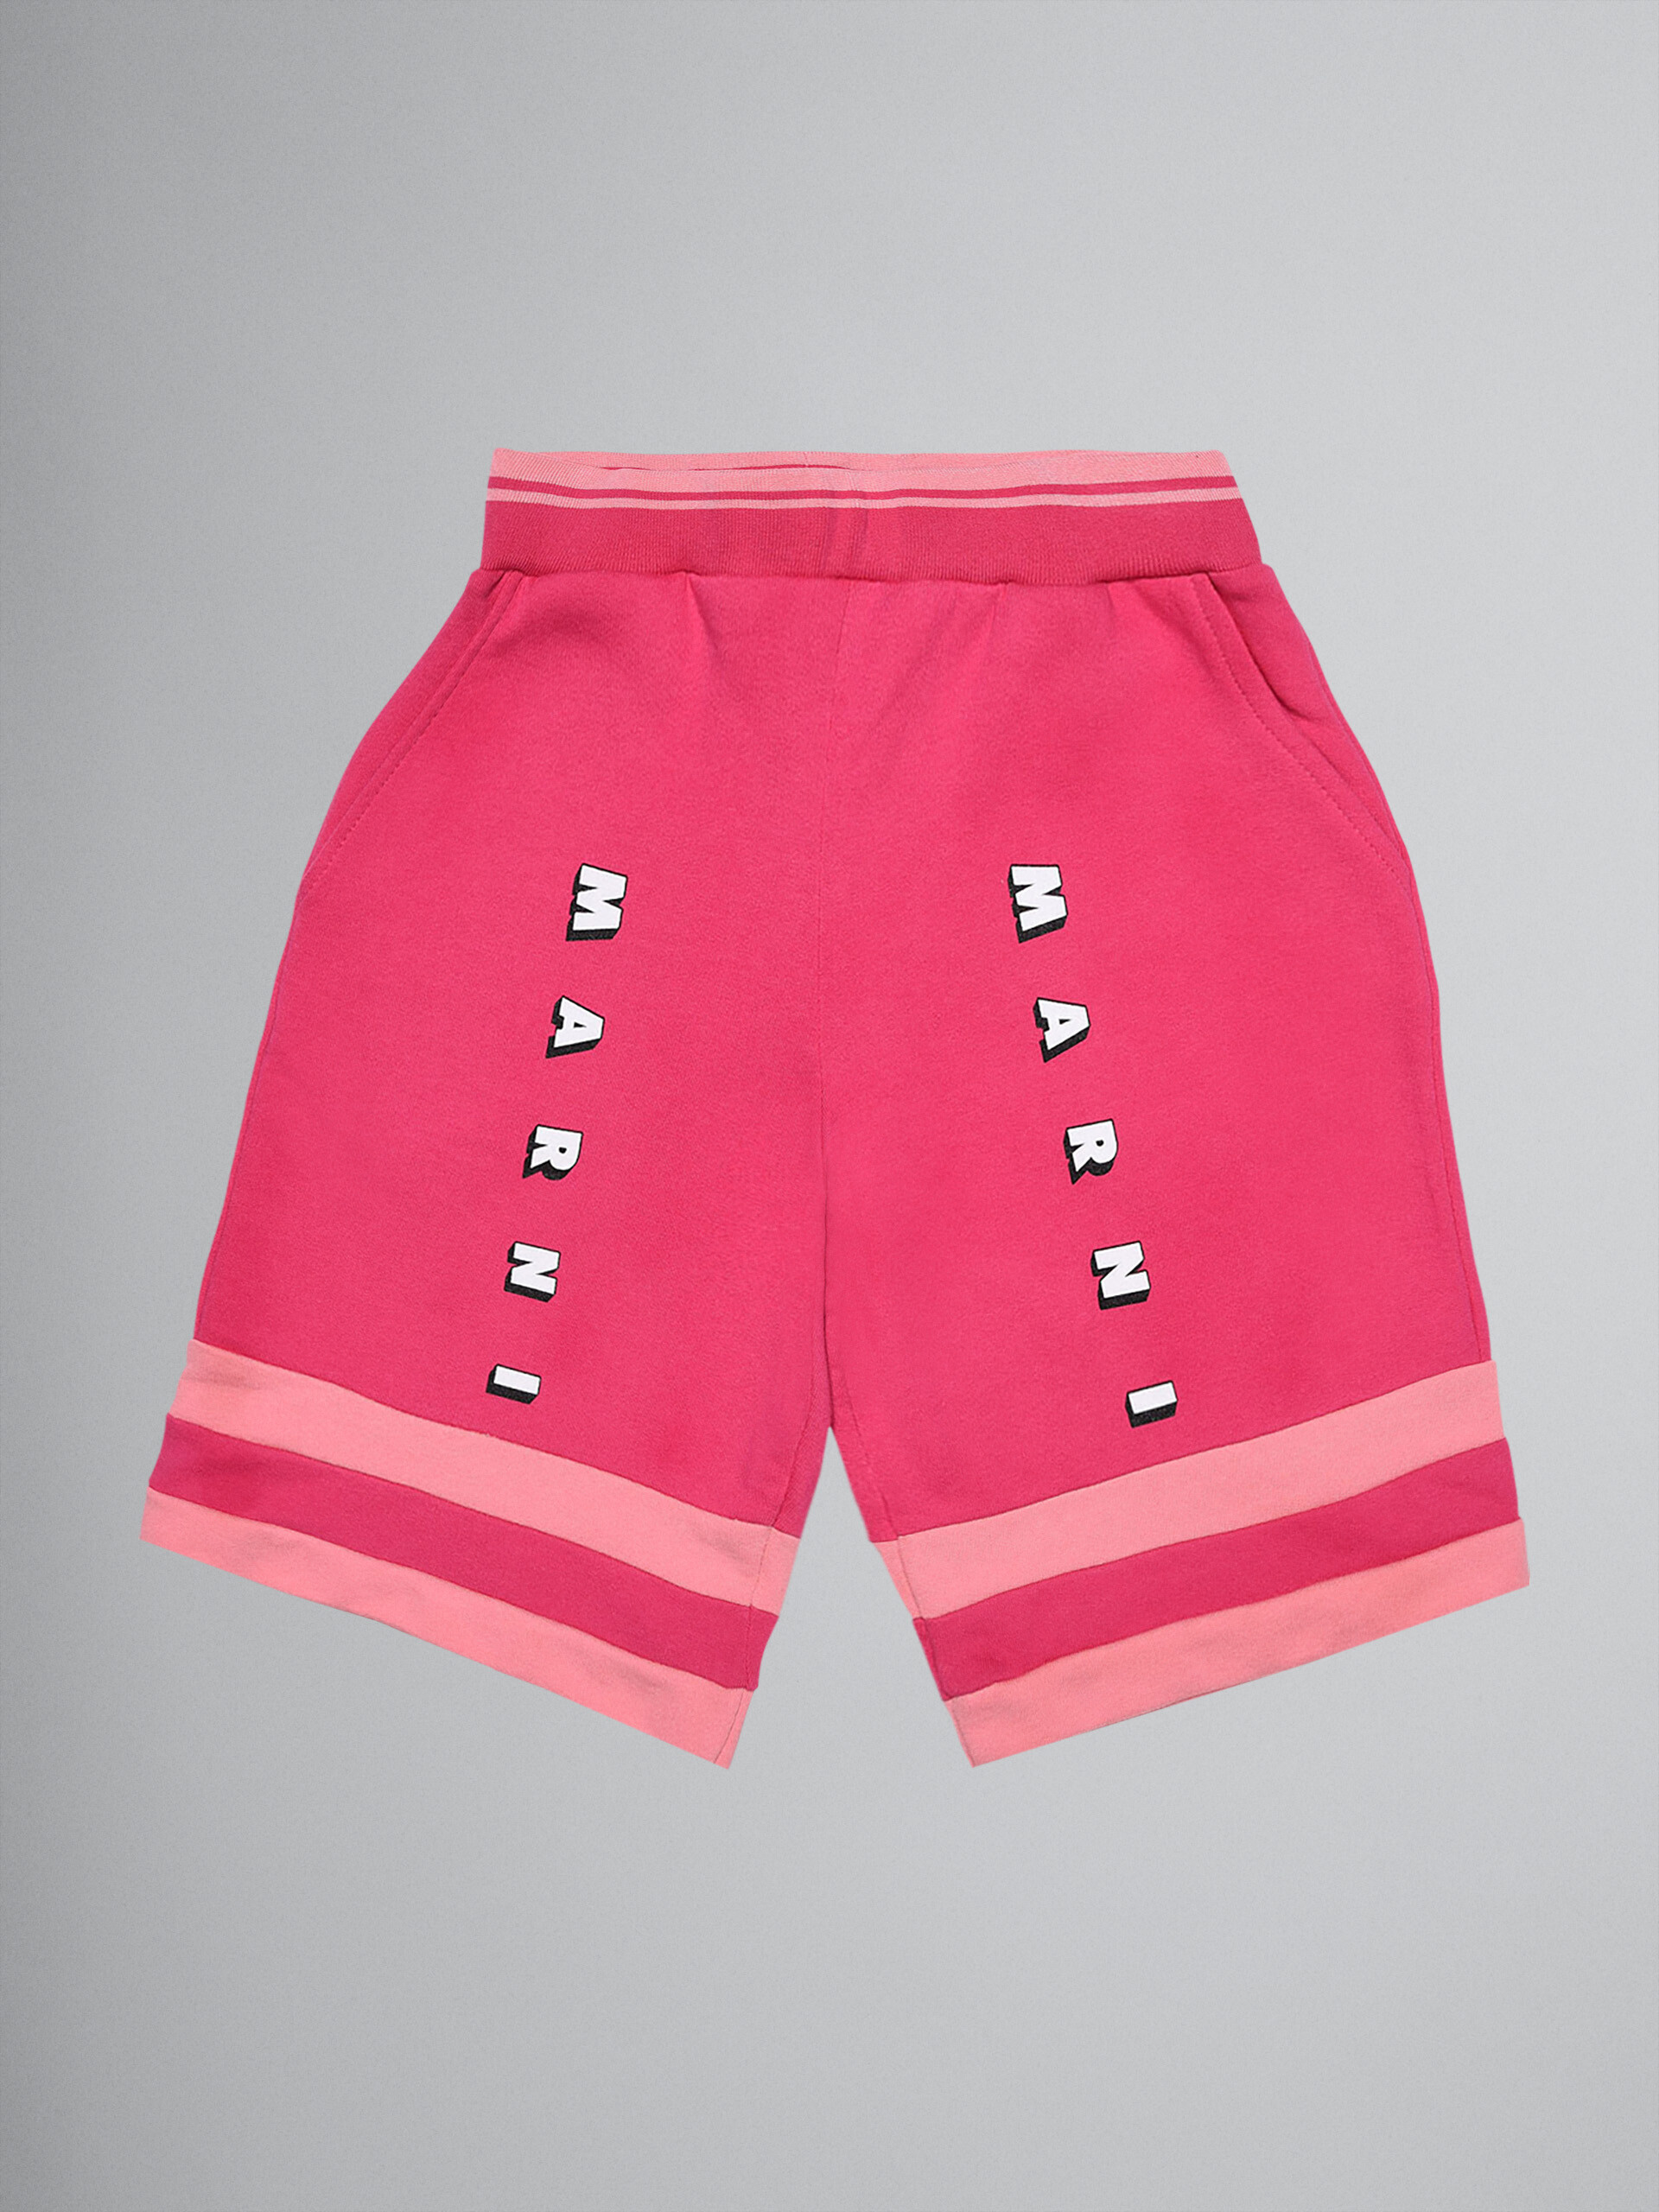 Colour-block pink sweatshirt cotton short track pants - Pants - Image 1